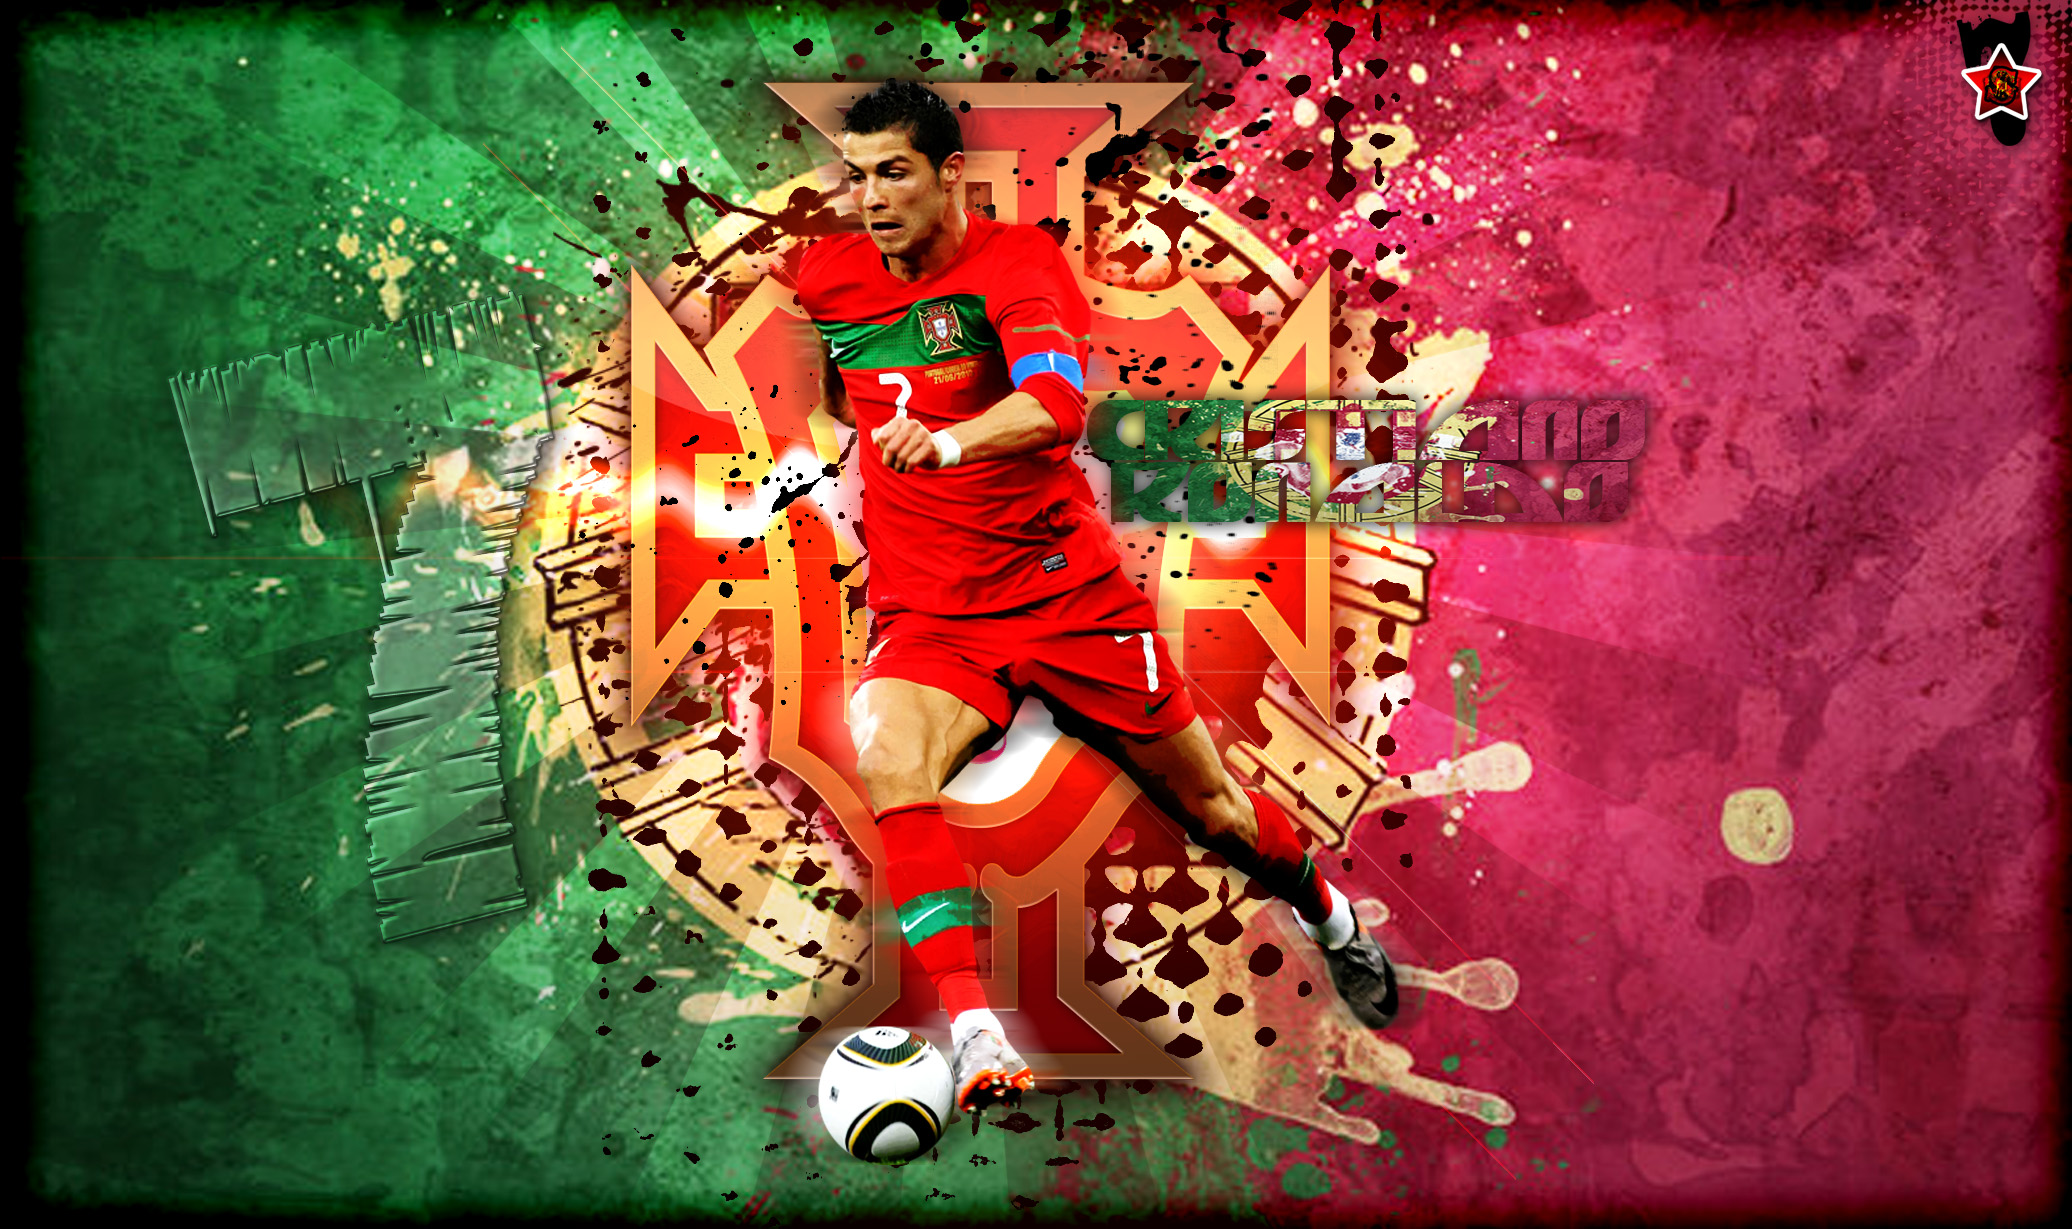 Download Wallpaper C Ronaldo7 Dikirim Oleh S7mu Bola Net